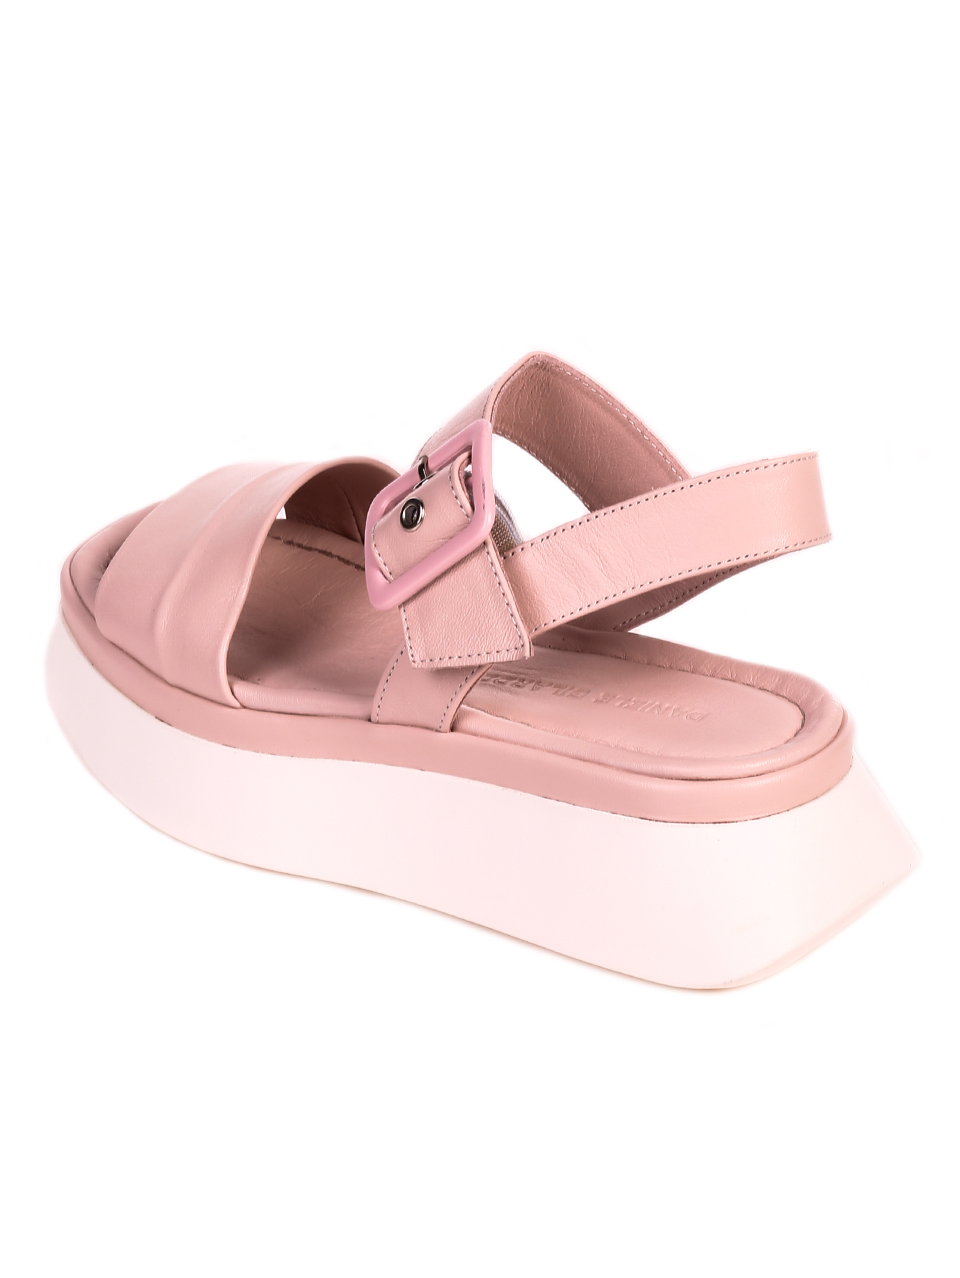 Ежедневни дамски сандали от естествена кожа 4AT-21324 pink